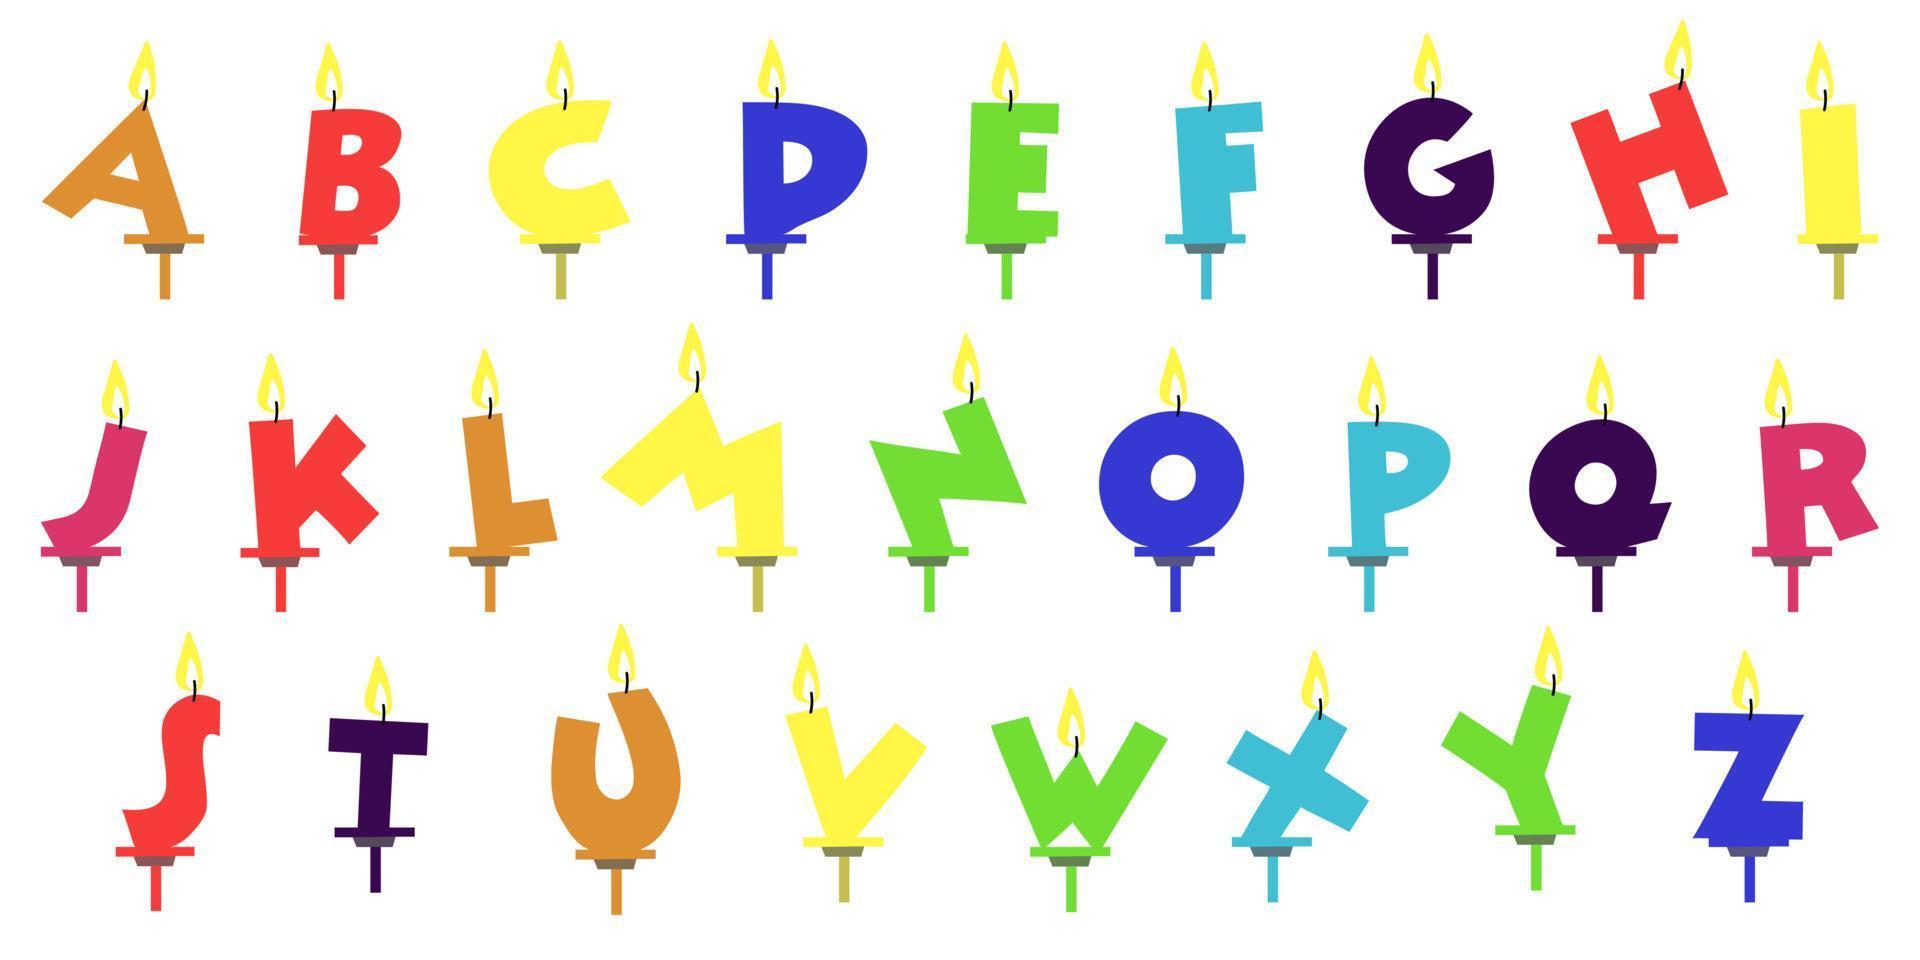 conception de polices colorées de bougies d'anniversaire. lettres et chiffres abc festifs lumineux surlignés en blanc. un ensemble de lettres de l'alphabet anglais. bougies allumées sur le gâteau. nous recueillons tous les mots. vecteur